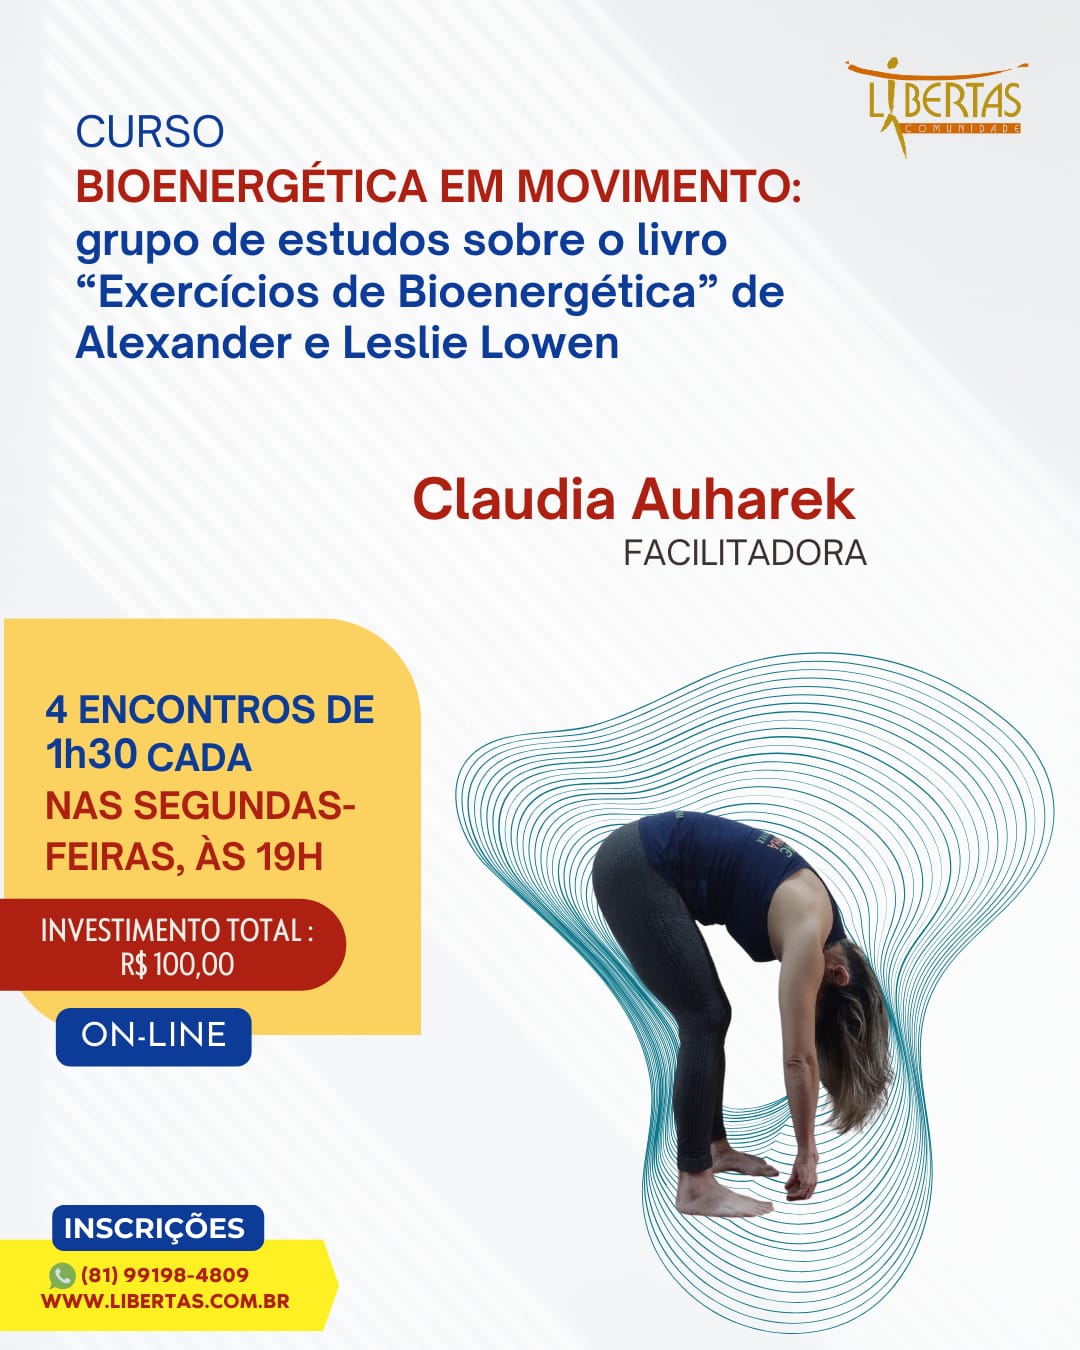 Bioenergética em movimento: grupo de estudos sobre o livro “Exercícios de Bioenergética” de Alexander e Leslie Lowen                                                